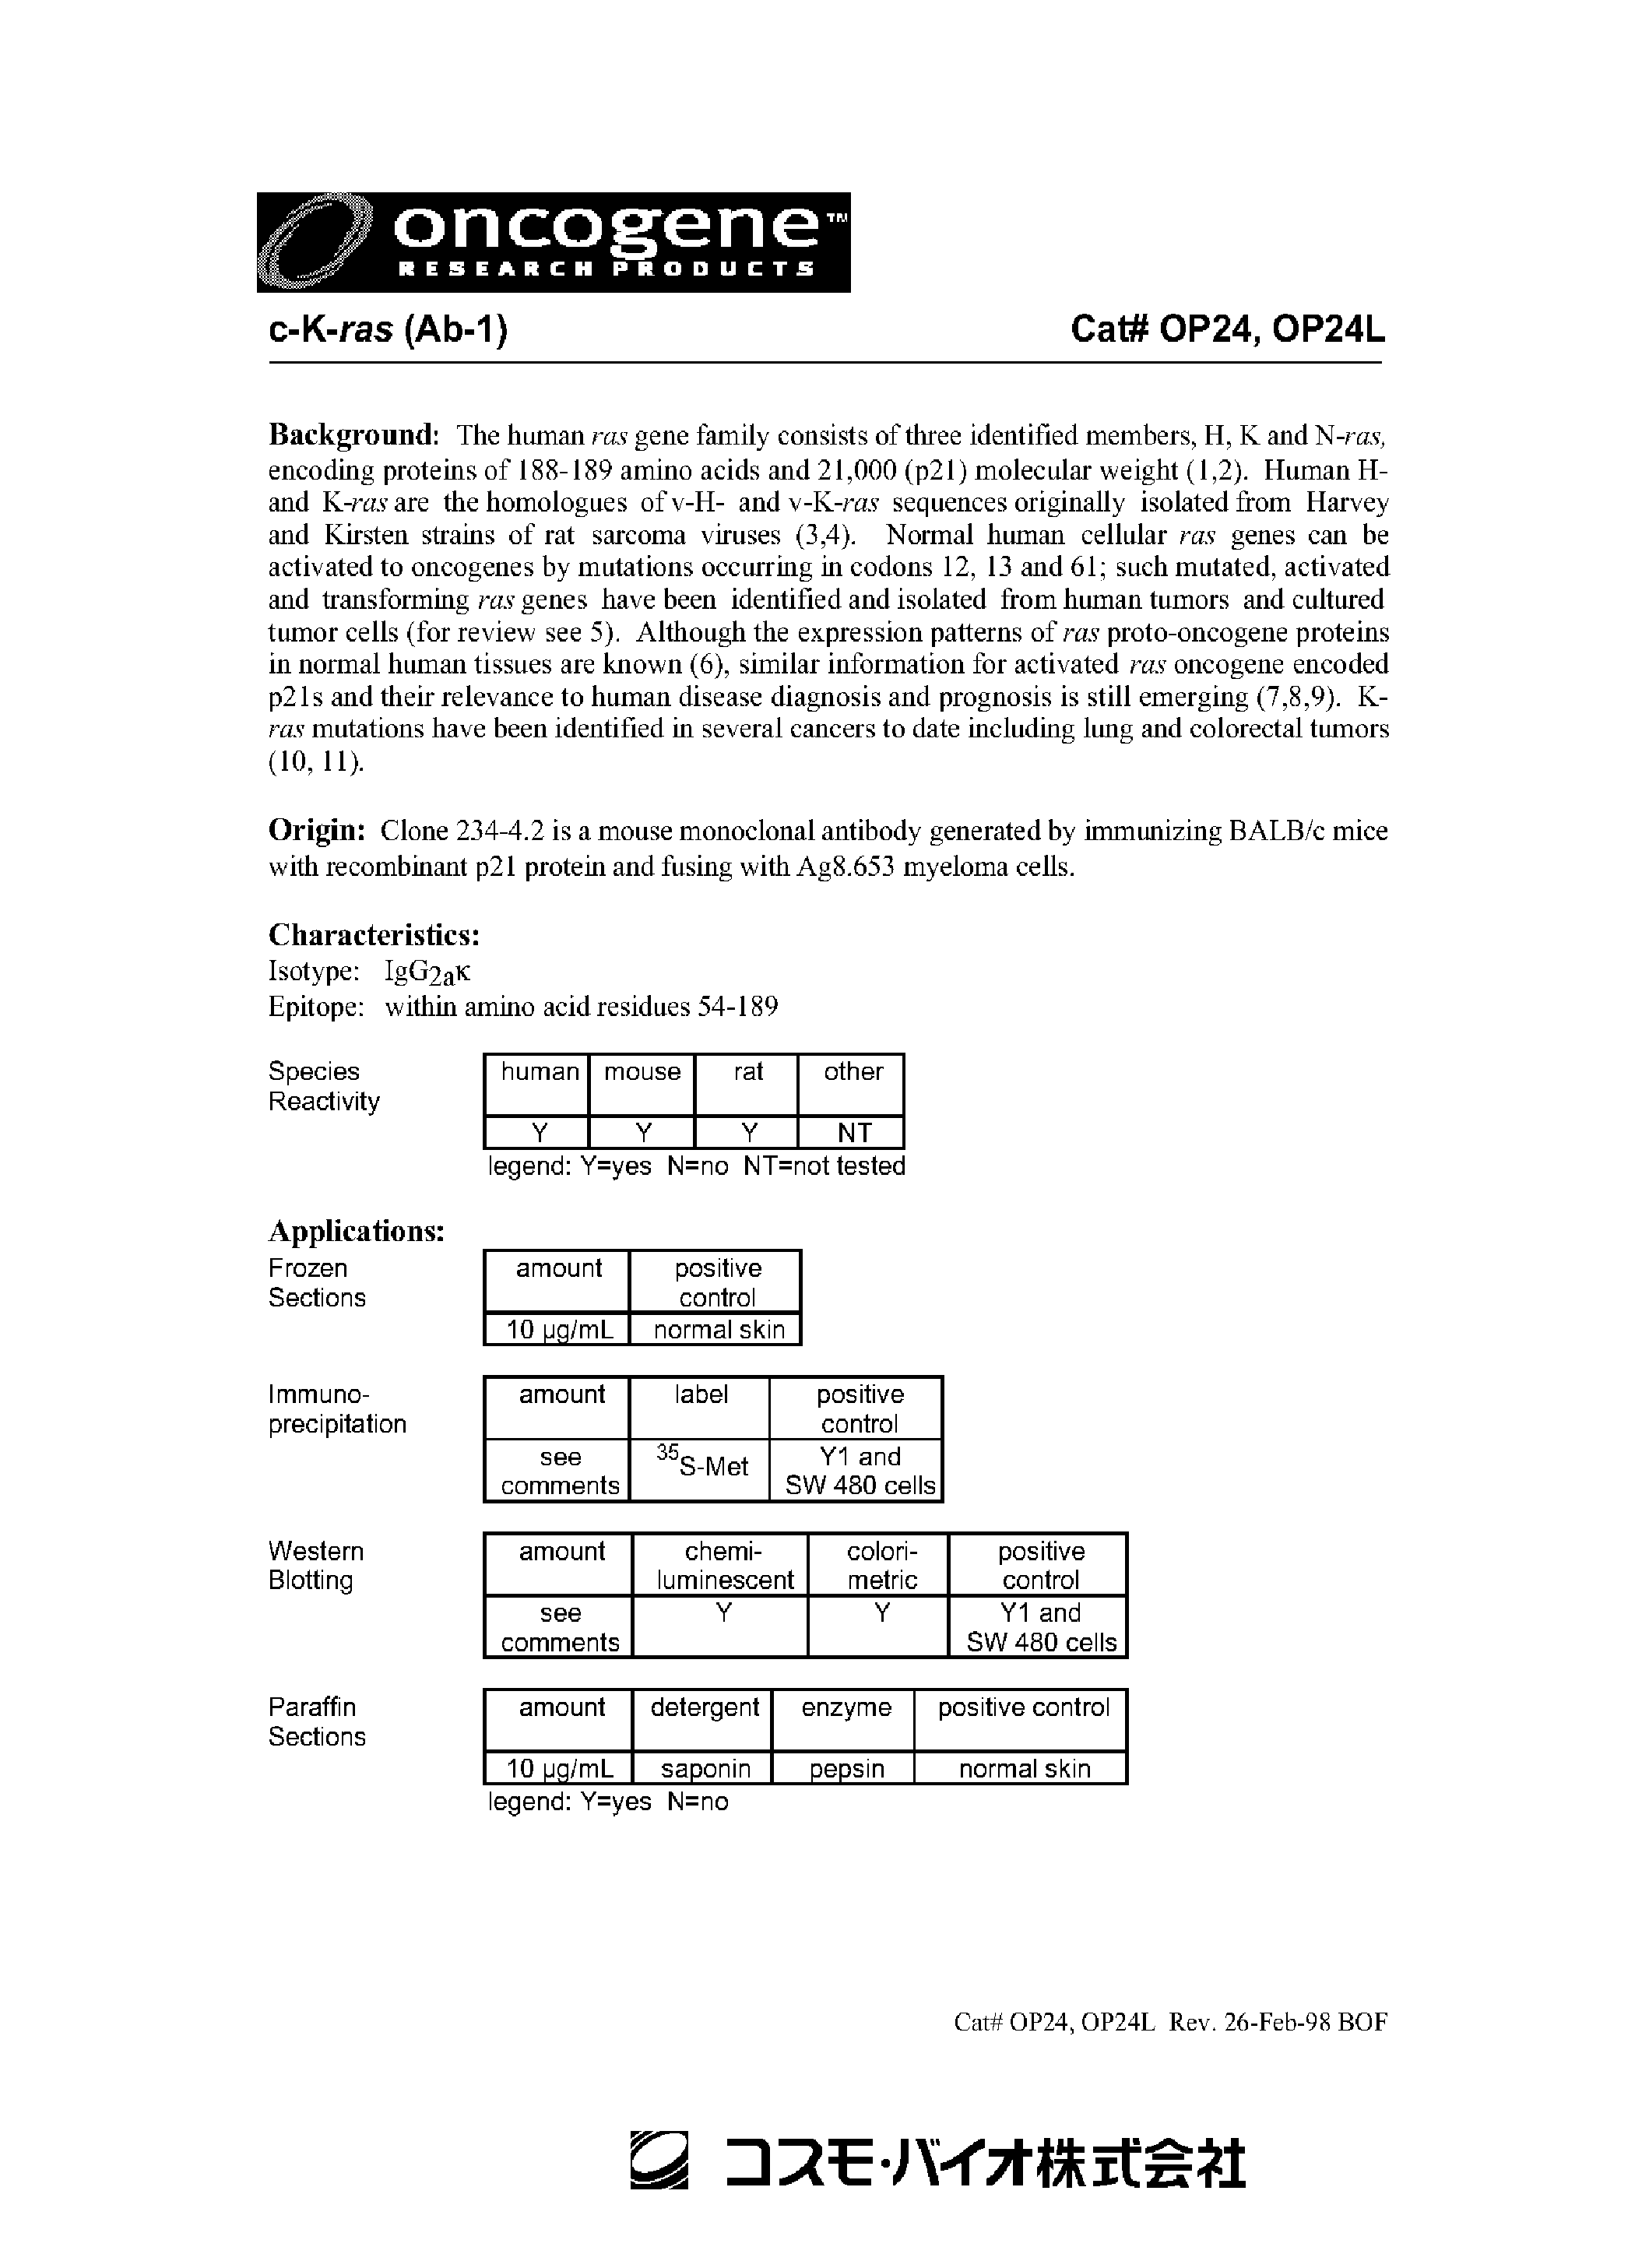 Datasheet OP24 - C-K-RAS AB-1 page 1